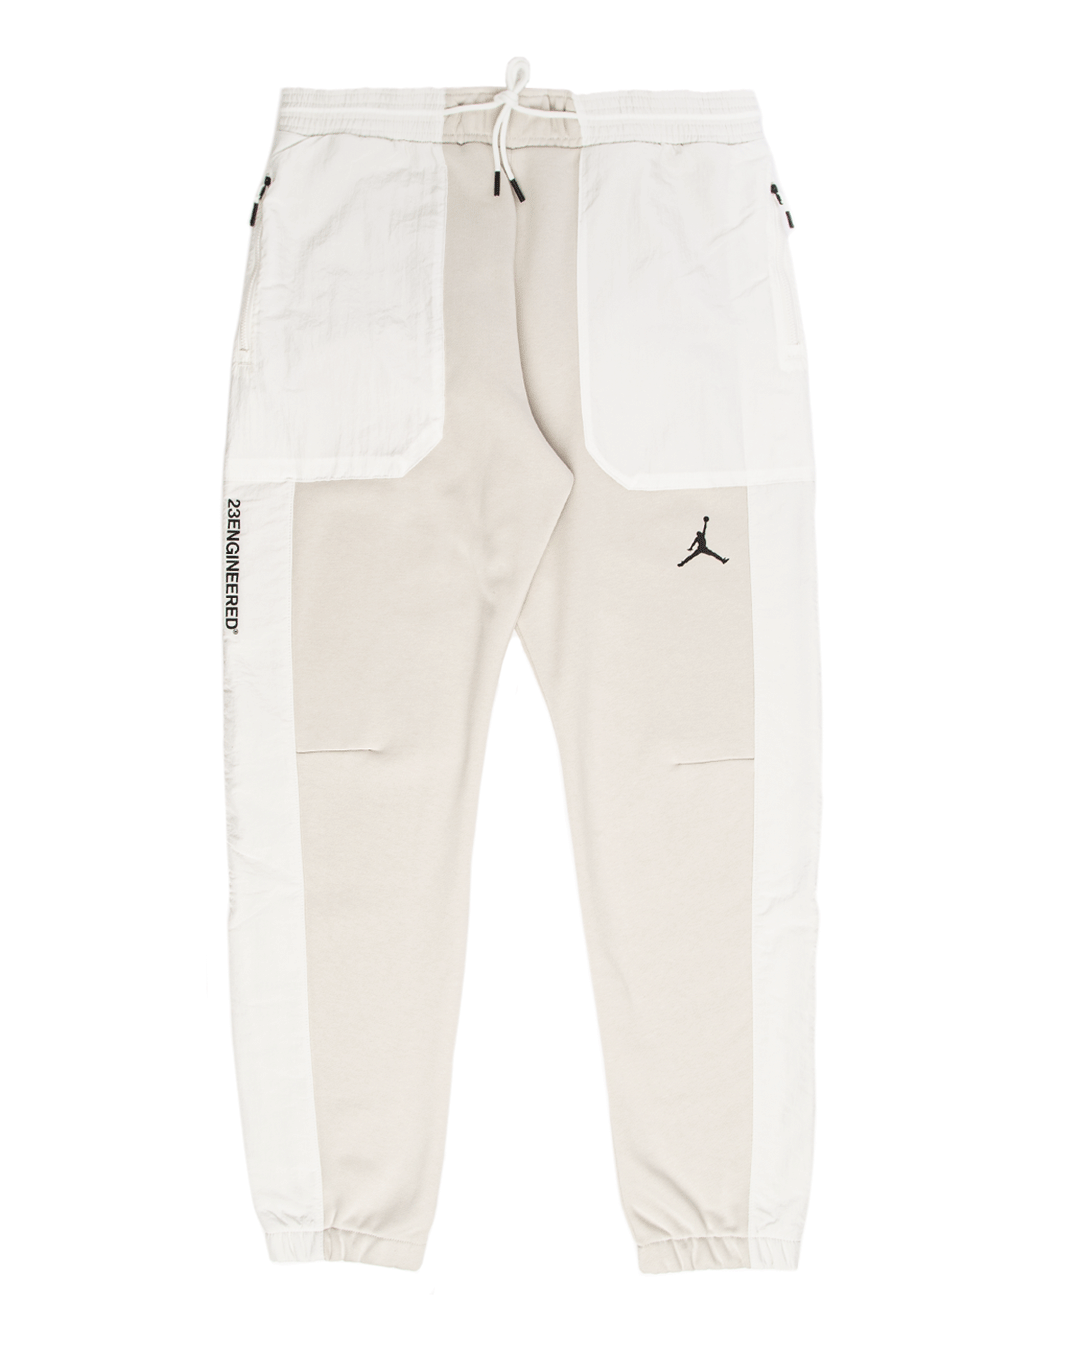 Jordan 23 Engineered Men's Fleece Pants